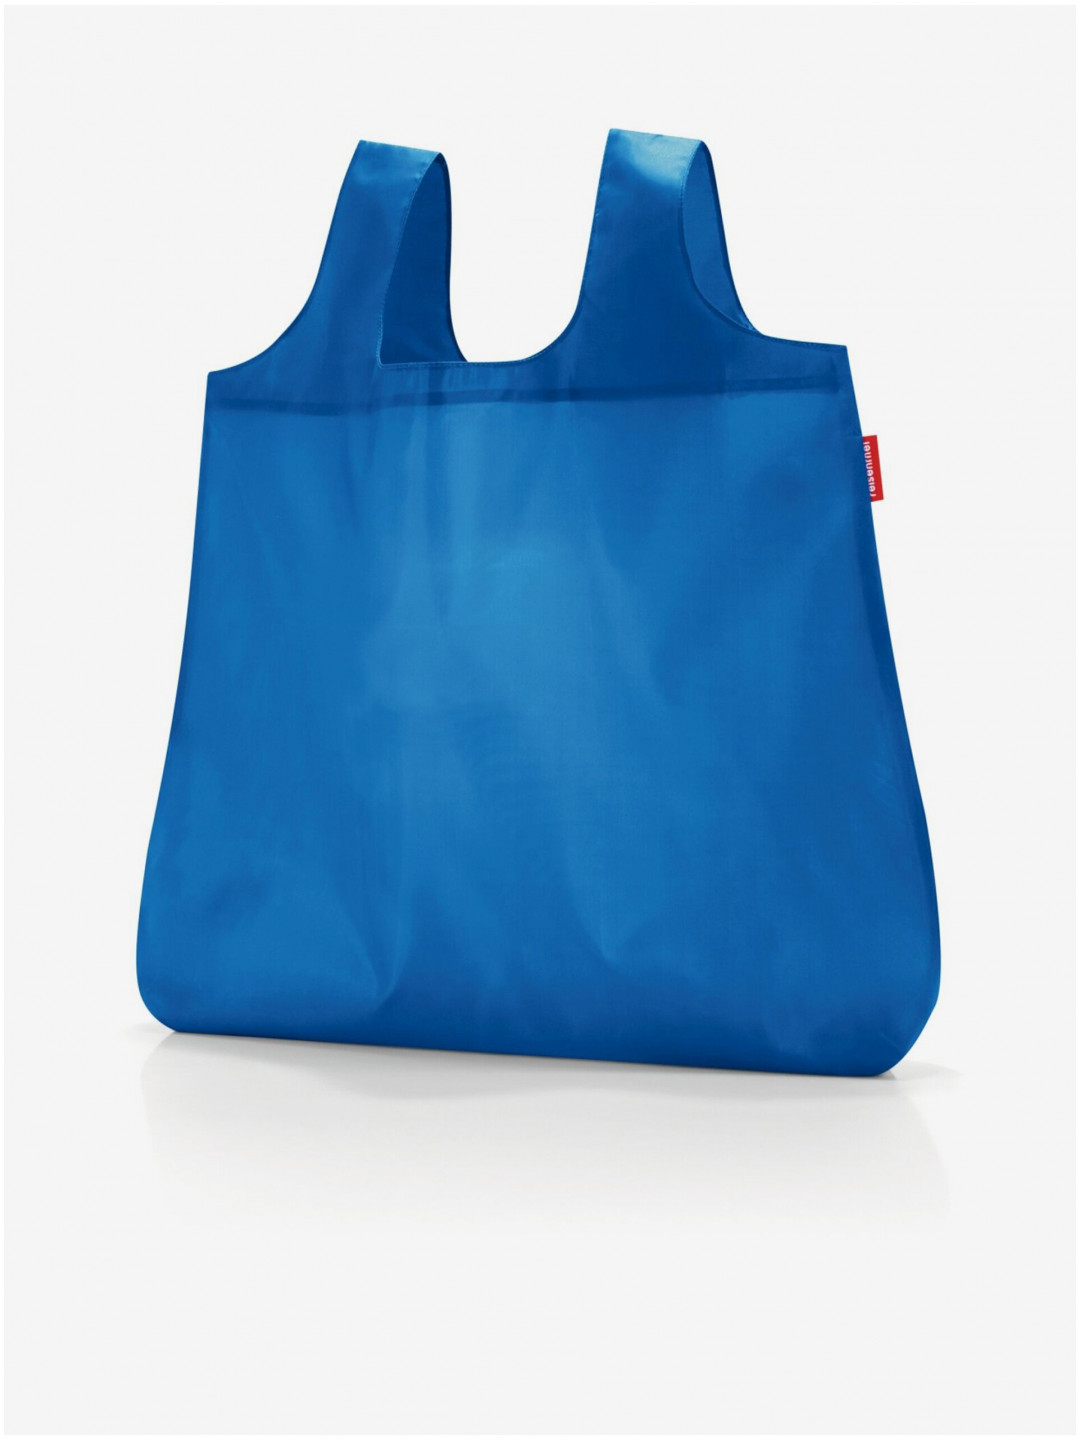 Modrá dámská shopper taška Reisenthel Mini Maxi Shopper 2